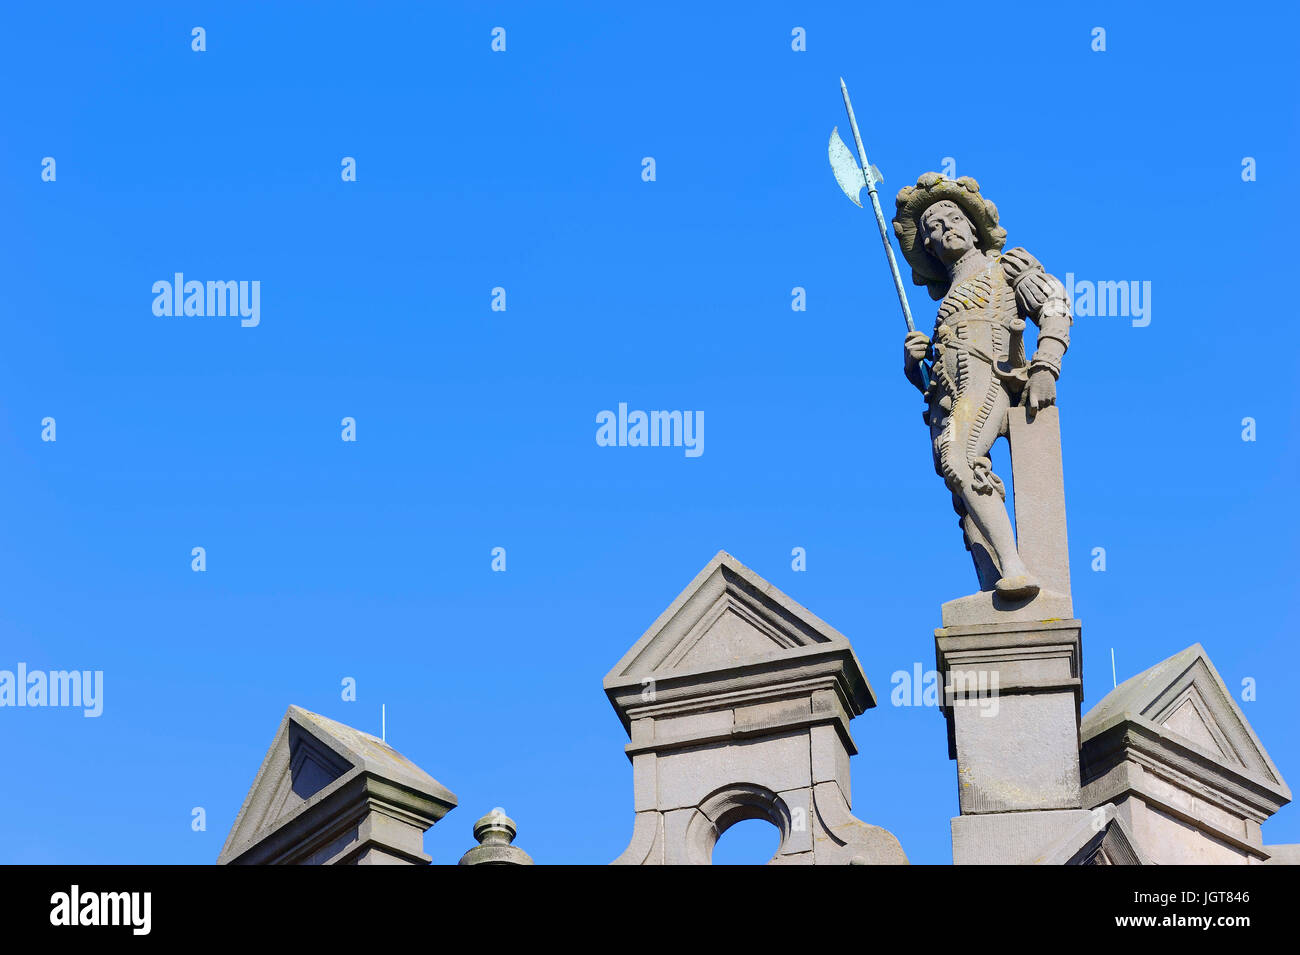 Estatua en el antiguo ayuntamiento, Arnhem, Gelderland, Netherlands / ayuntamiento | Estatua auf altem Rathaus, Arnheim, Gelderland, Niederlande Foto de stock